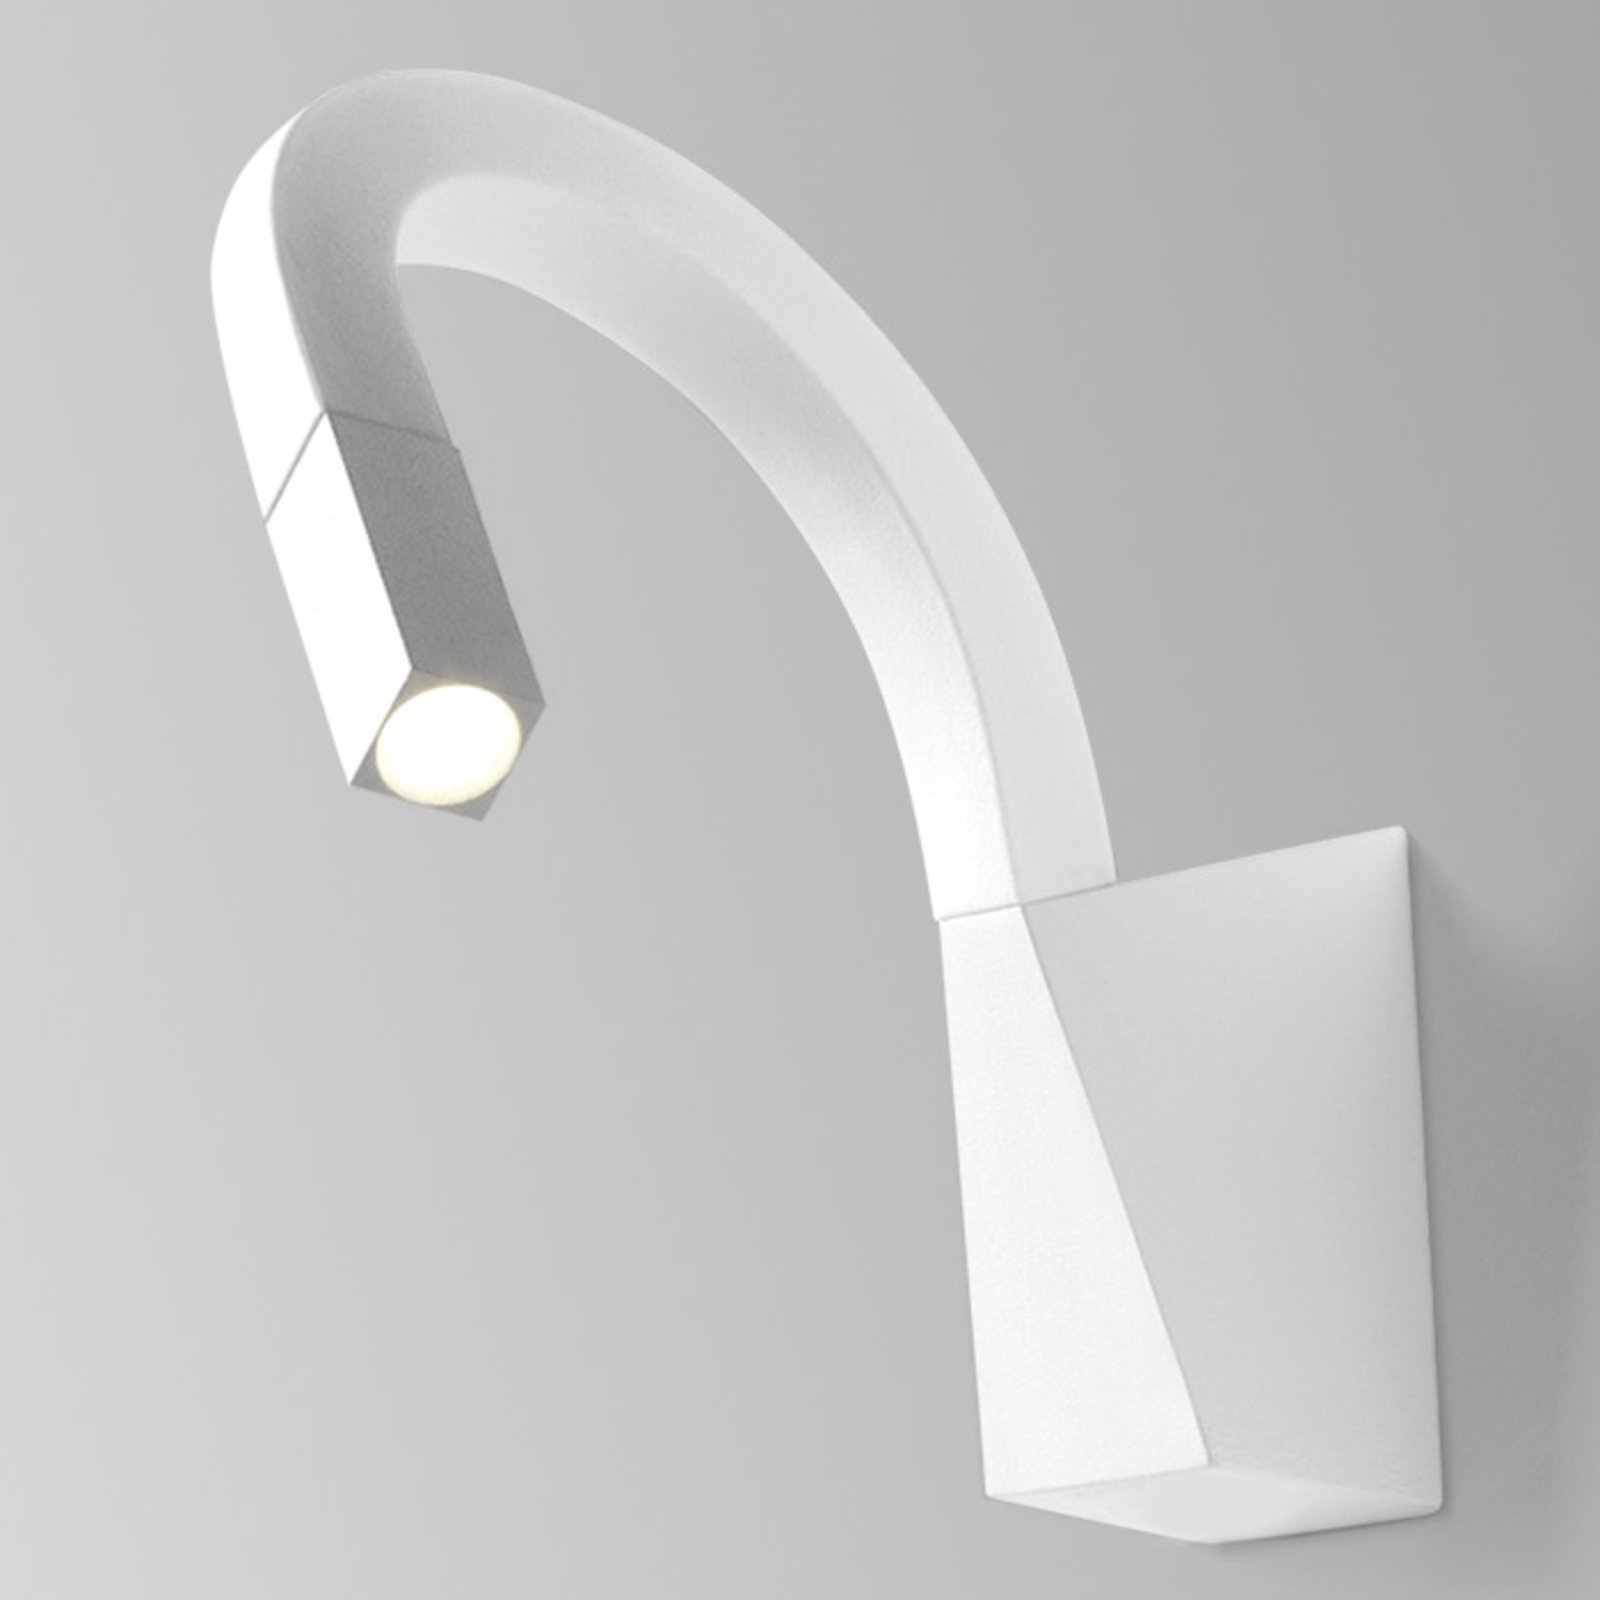 Flexible Snake LED wall light in white